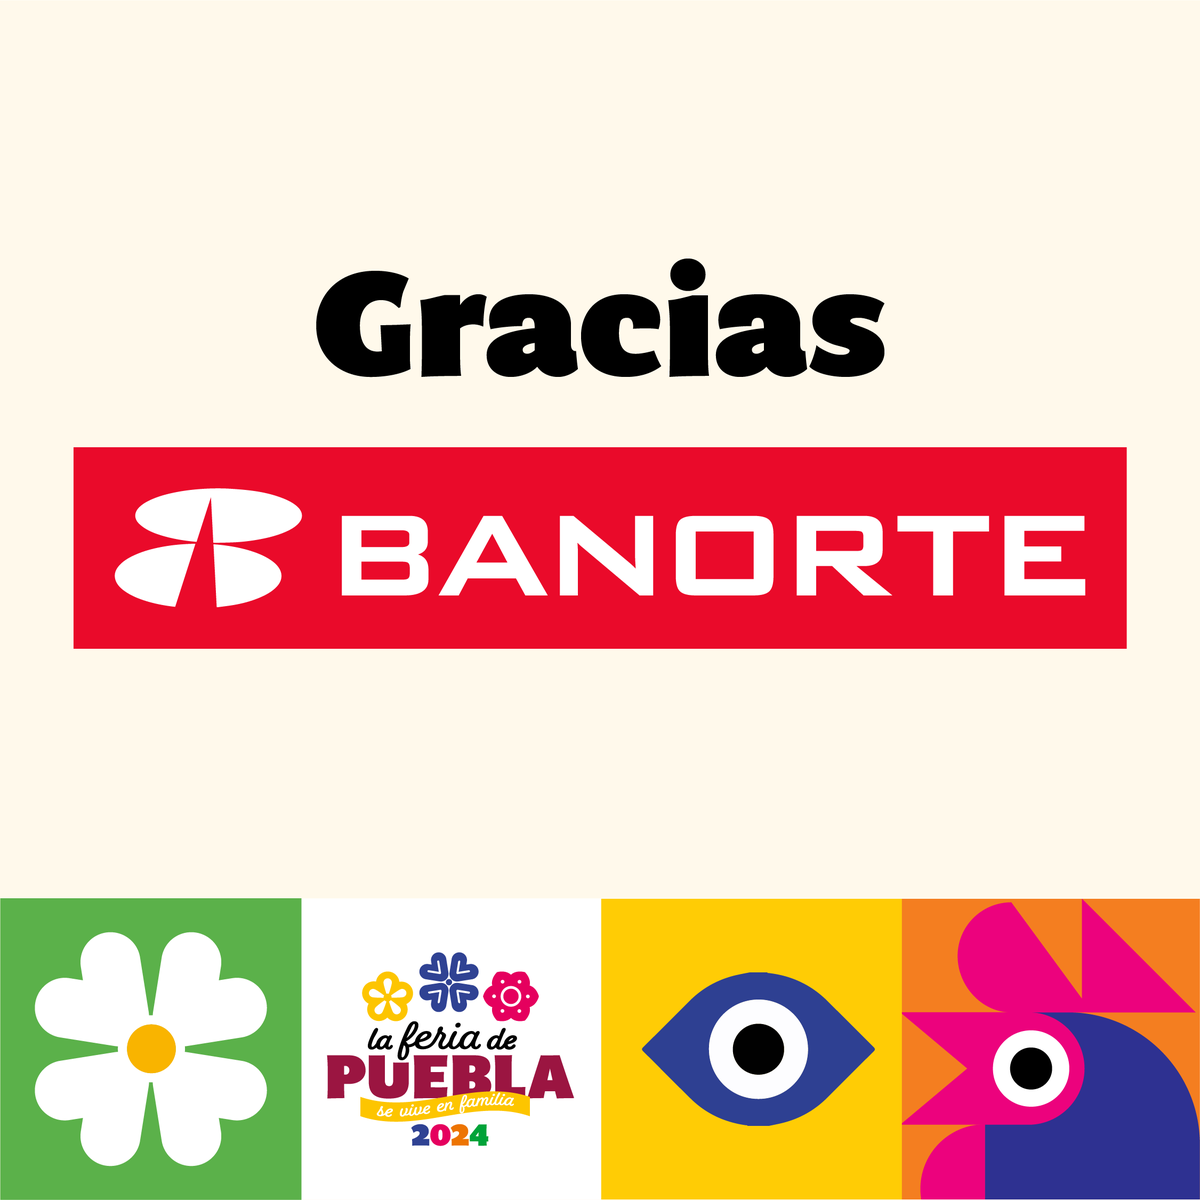 🥰 Gracias Banorte, por ser patrocinador oficial de la Feria de Puebla 2024. 🤝 ¡Juntos vivimos experiencias más fuertes! #FeriadePuebla2024